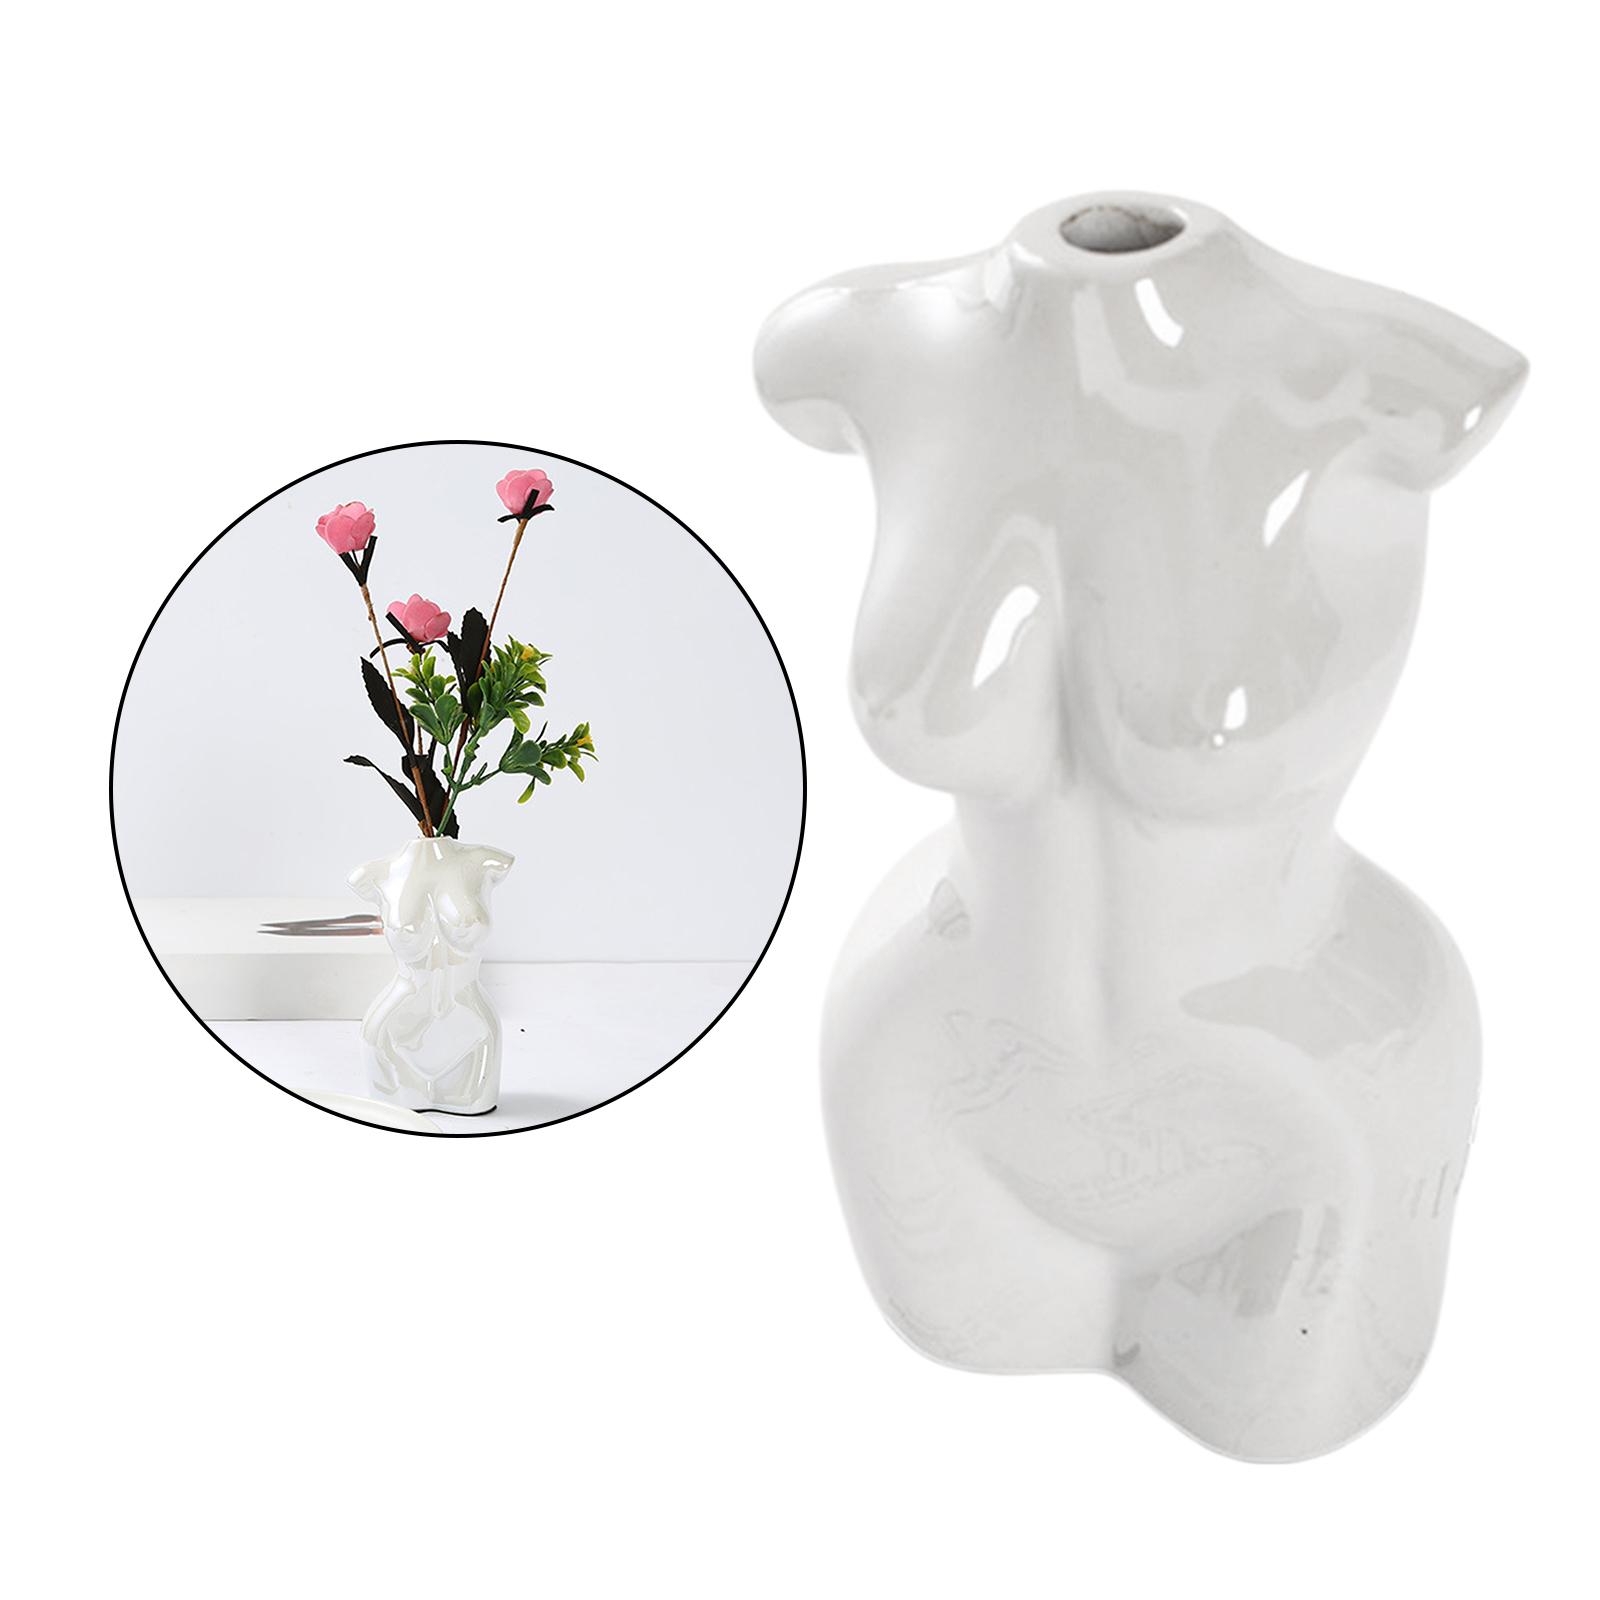 Female Body Vase Art Ceramic Home Tabletop Decor Flower Pot Vase White